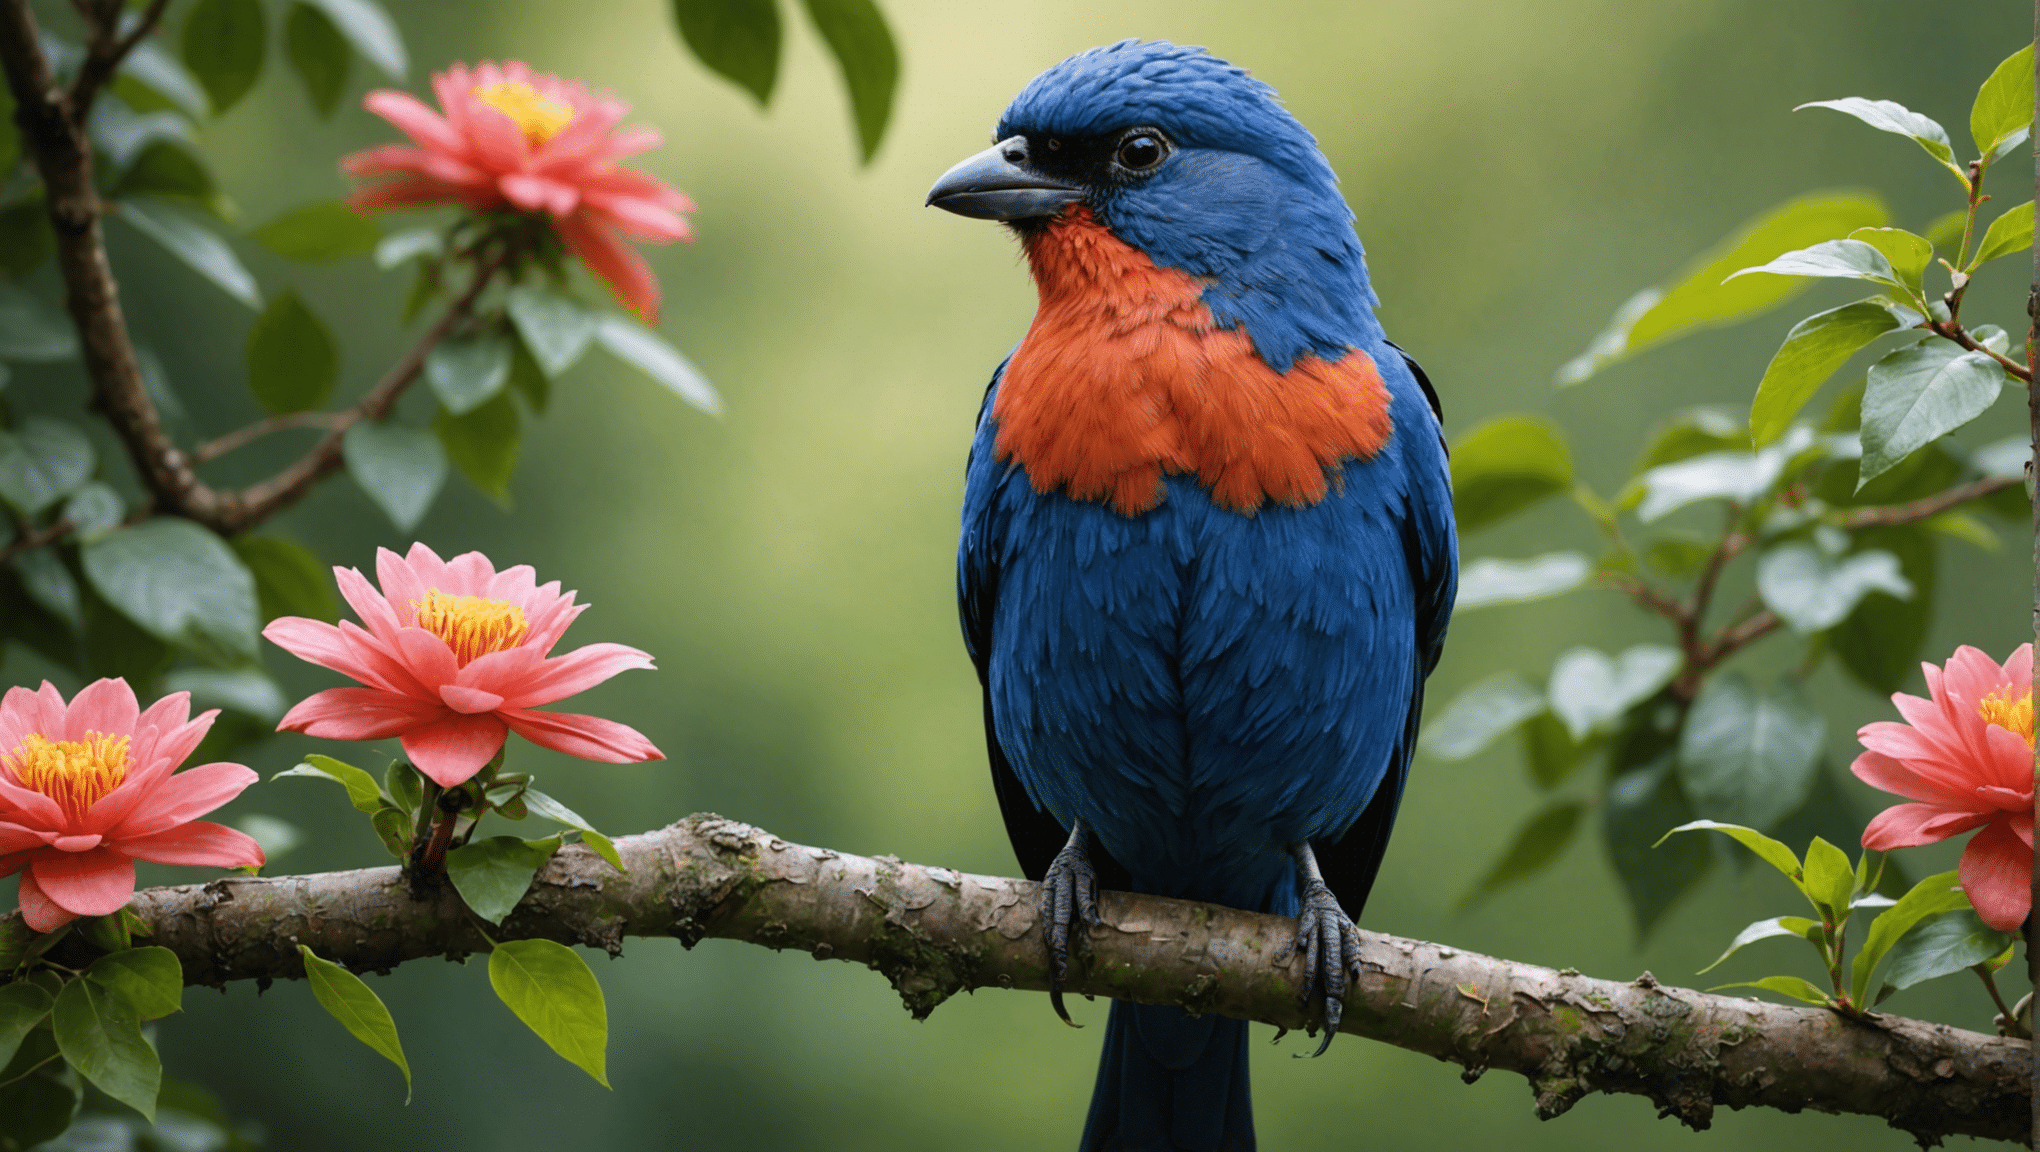 Sind hässliche Vögel eigentlich schön? Finden Sie es heraus bei dieser faszinierenden Erkundung der verborgenen Schönheit der Natur und der überraschenden Wahrheit hinter der Schönheit scheinbar hässlicher Vögel.